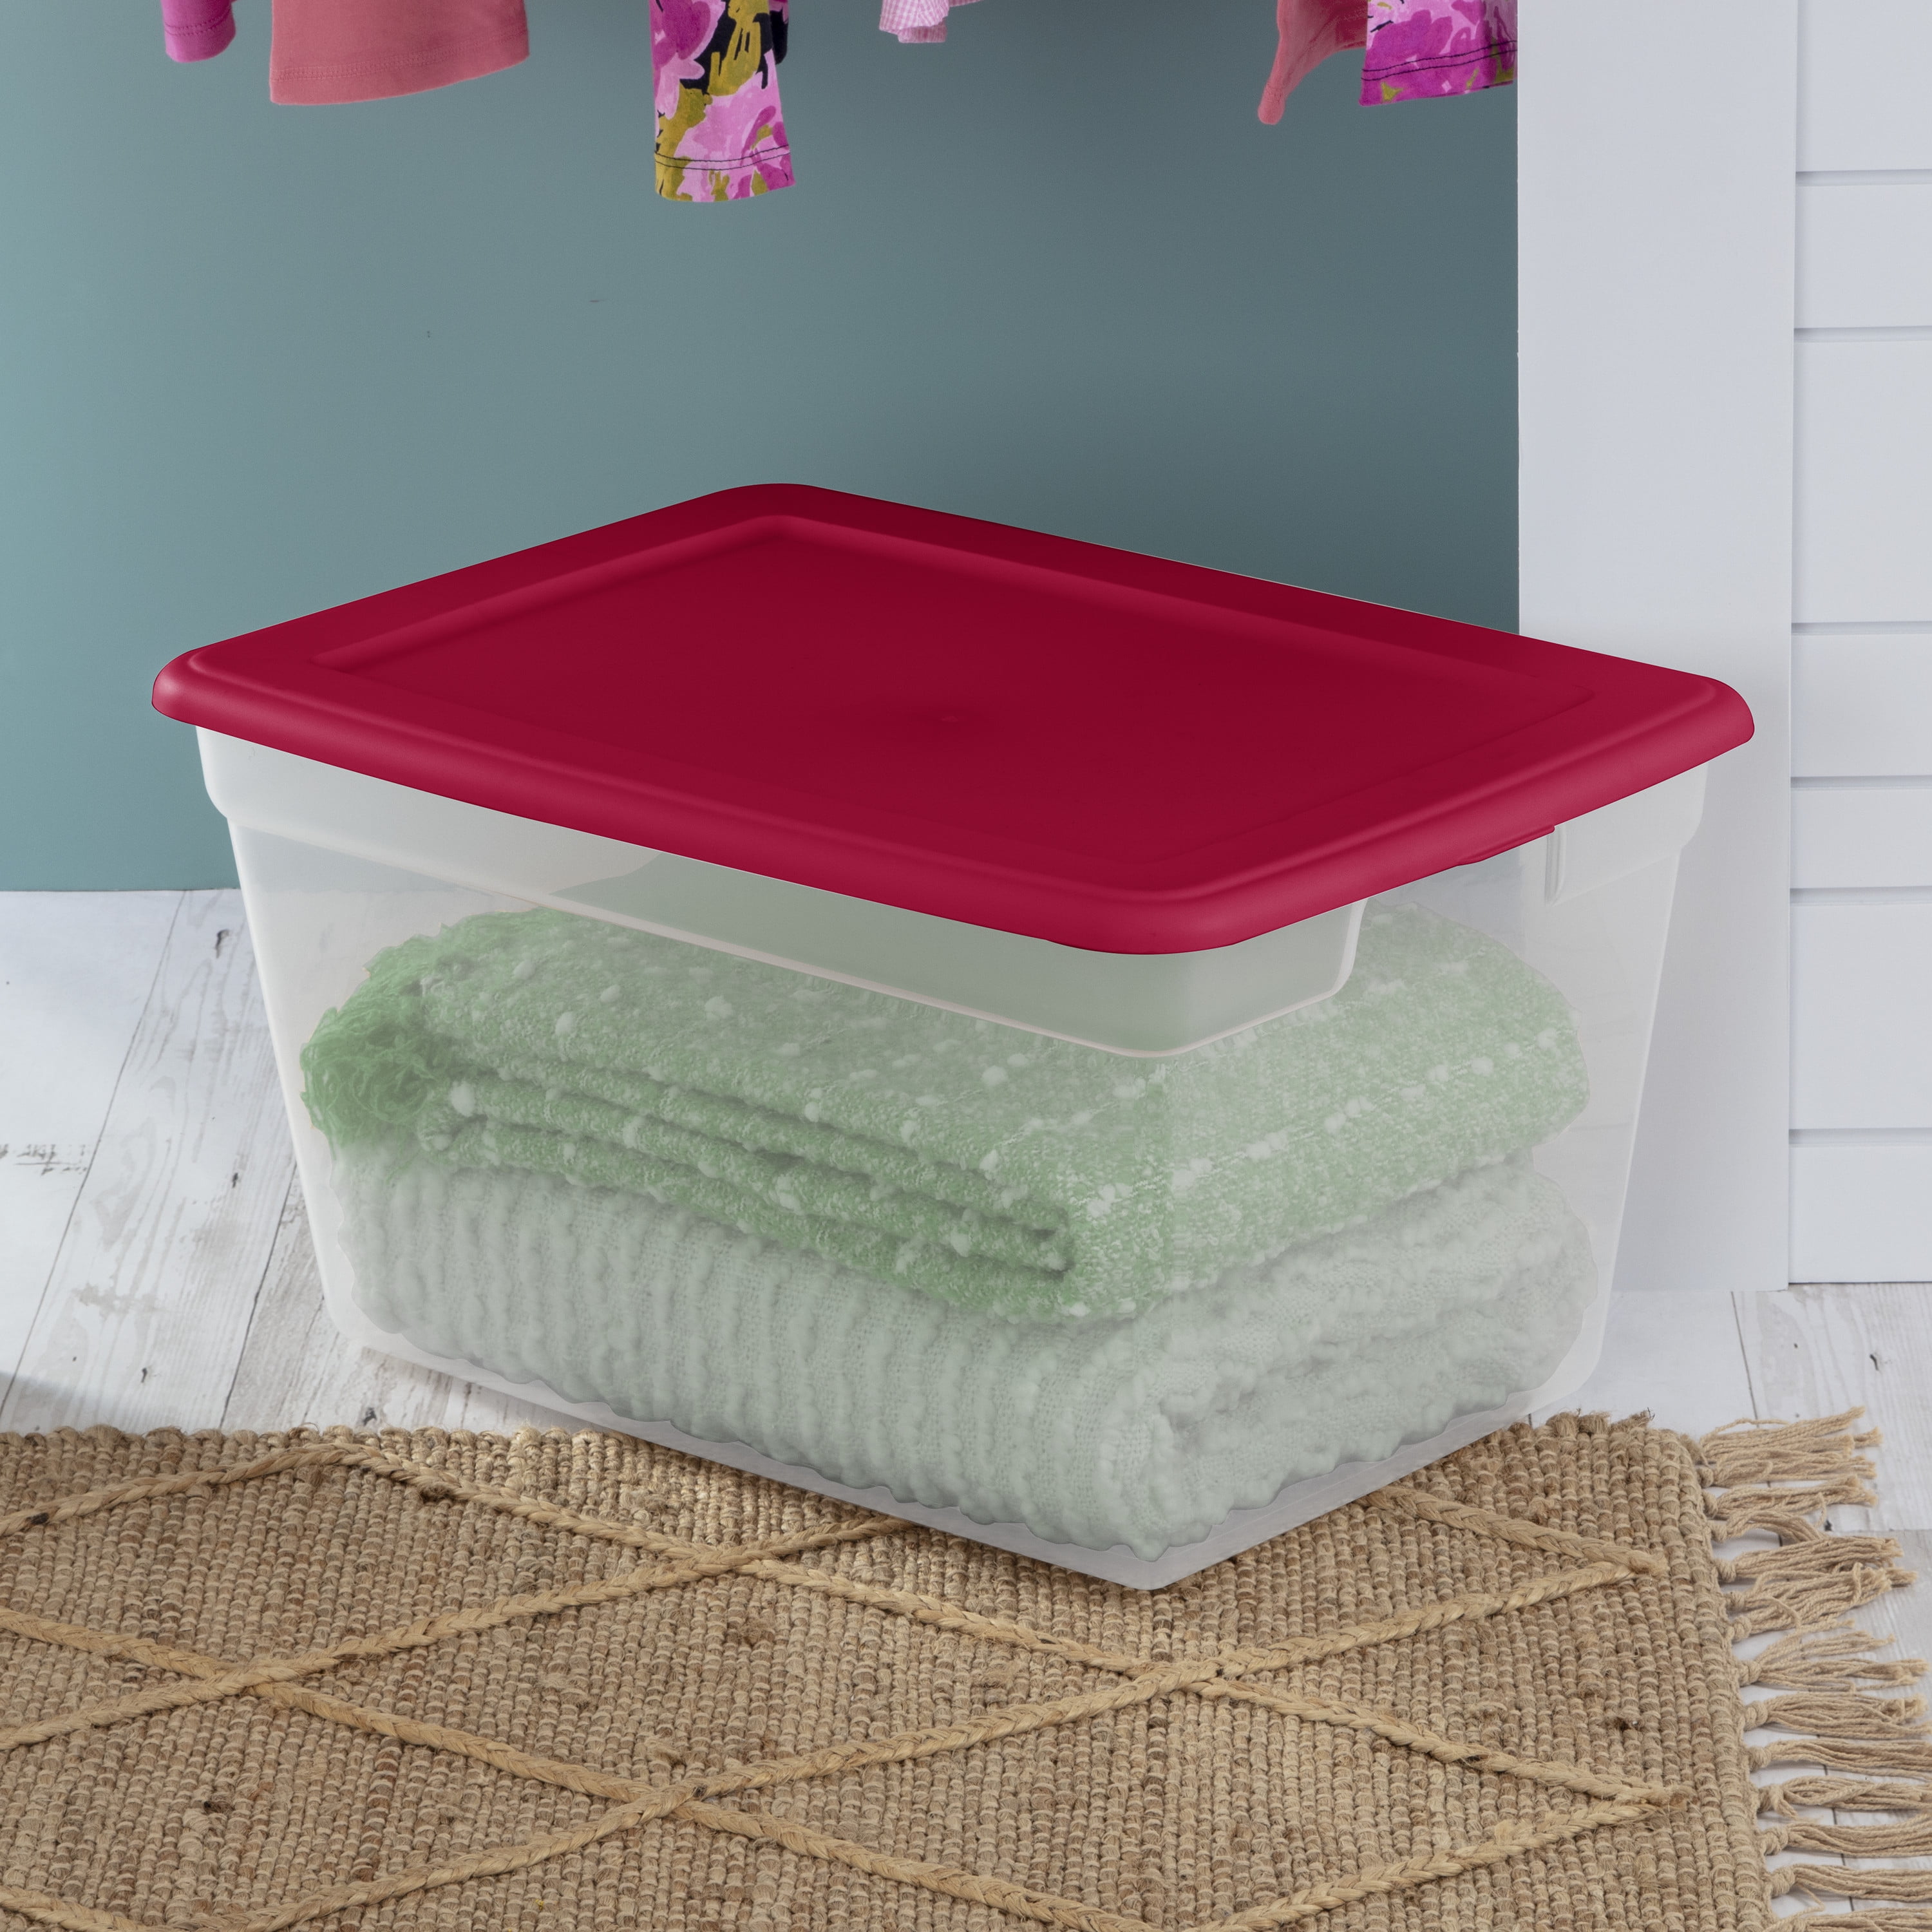 Sterilite Plastic 58 Qt. Storage Box Blush Pink Tint Set of 8